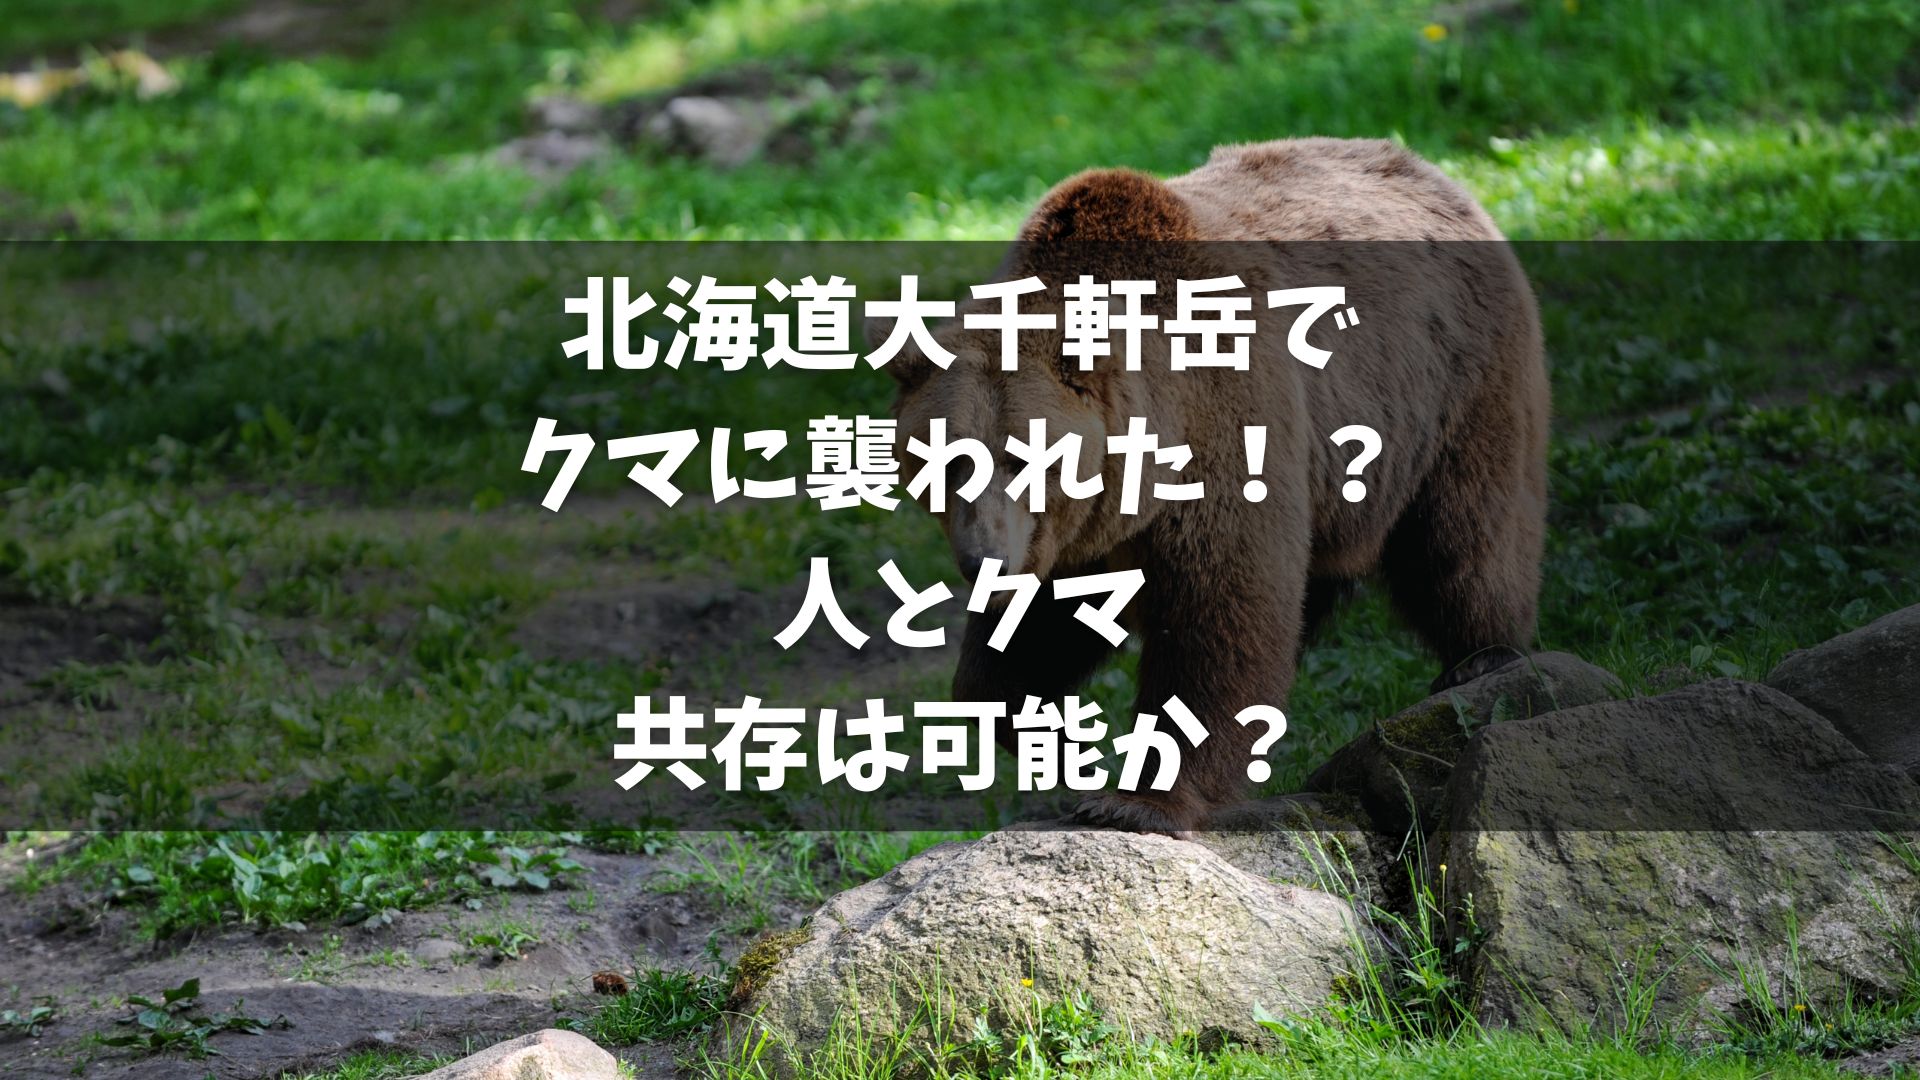 北海道・福島町の大千軒岳で見つかった遺体は、函館市の22歳の男子大学生であることが判明。 この遺体はクマに襲われた可能性が高い。 遺体の死因は出血性ショック。 クマの死骸も同地で発見され、ナイフによる反撃で致命傷を受けていた。 この事件を受けて、野生動物との接触の危険性が再認識されている。